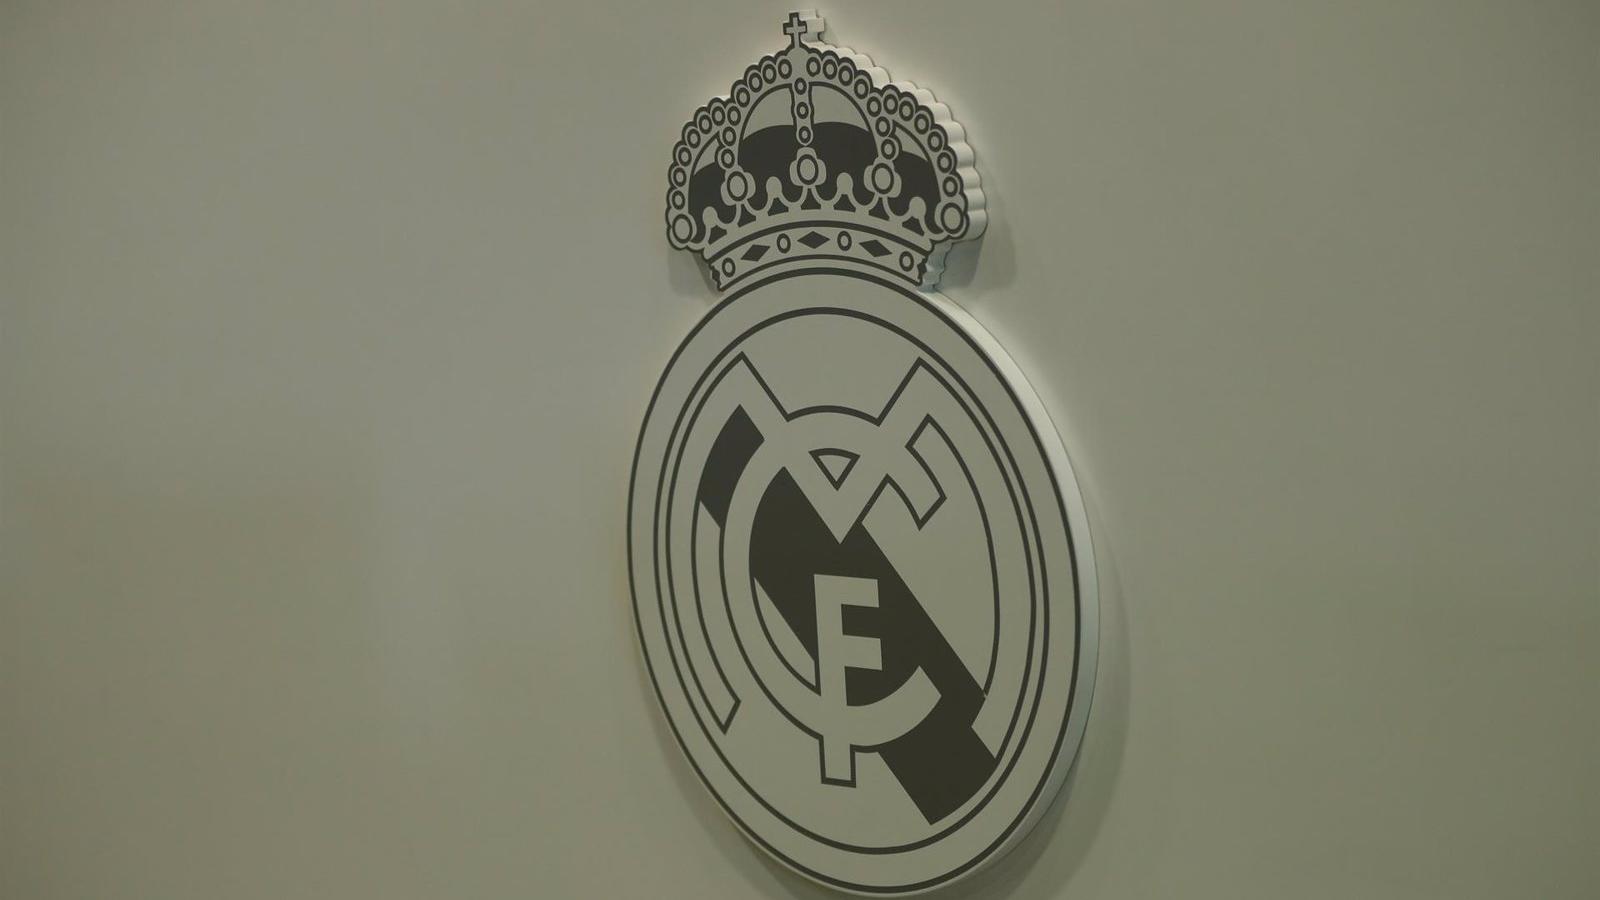 Fallece Luis Martínez-Laforgue, exvicepresidente del Real Madrid